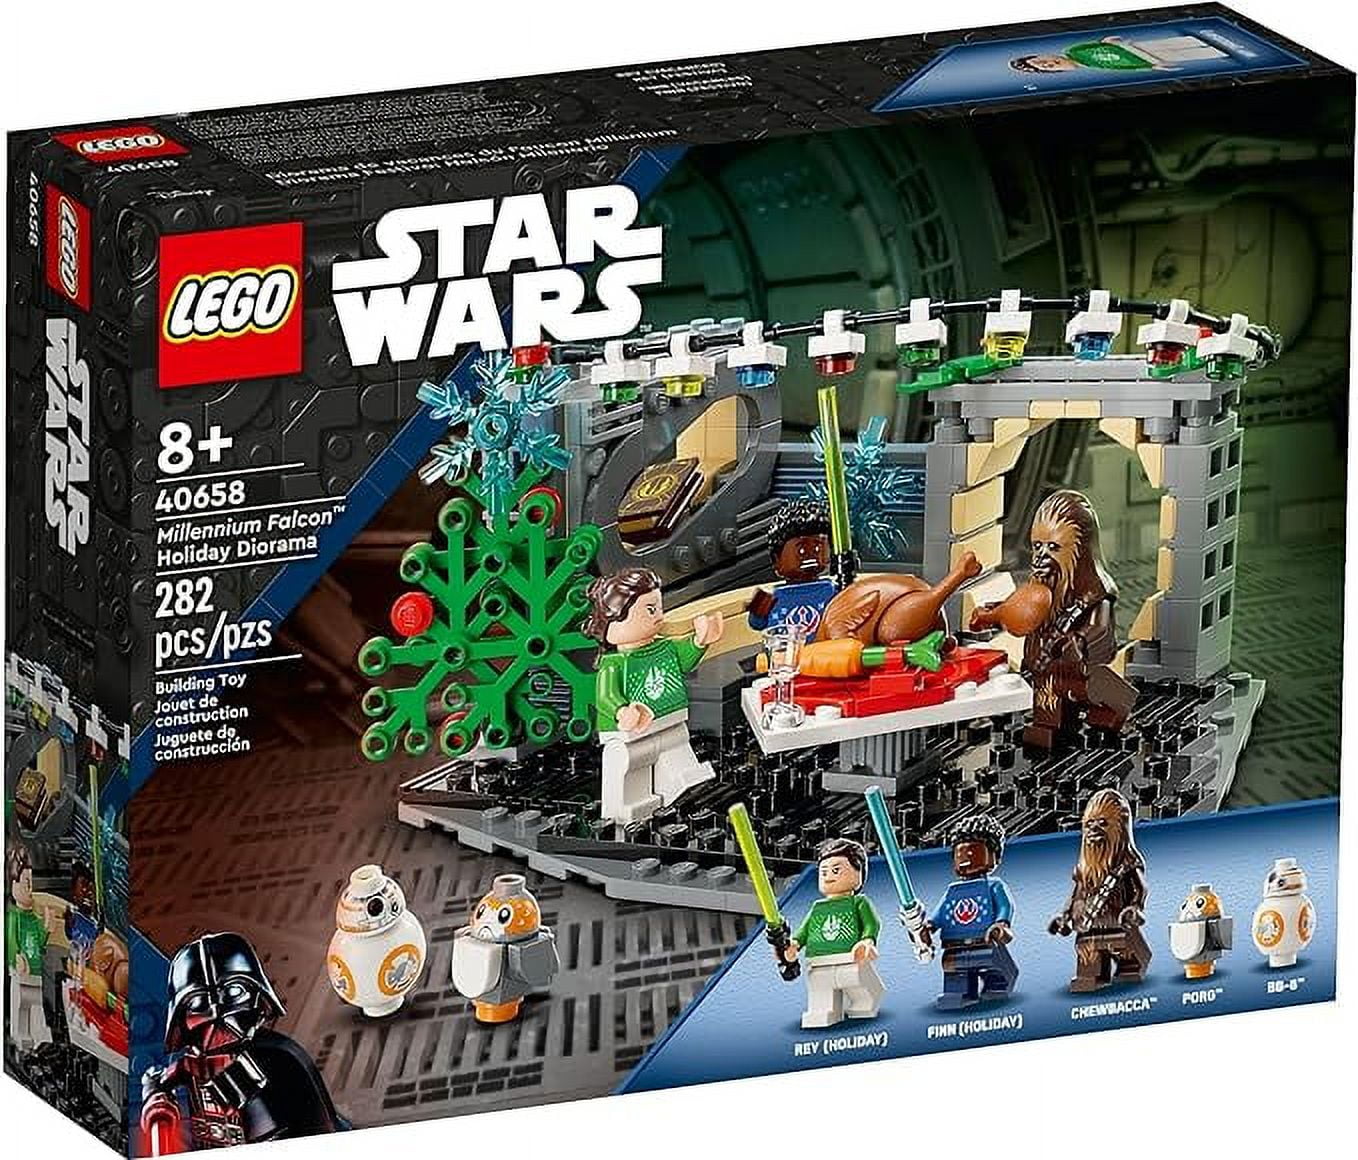 LEGO Star Wars 40658 - Millennium Falcon Holiday Diorama 